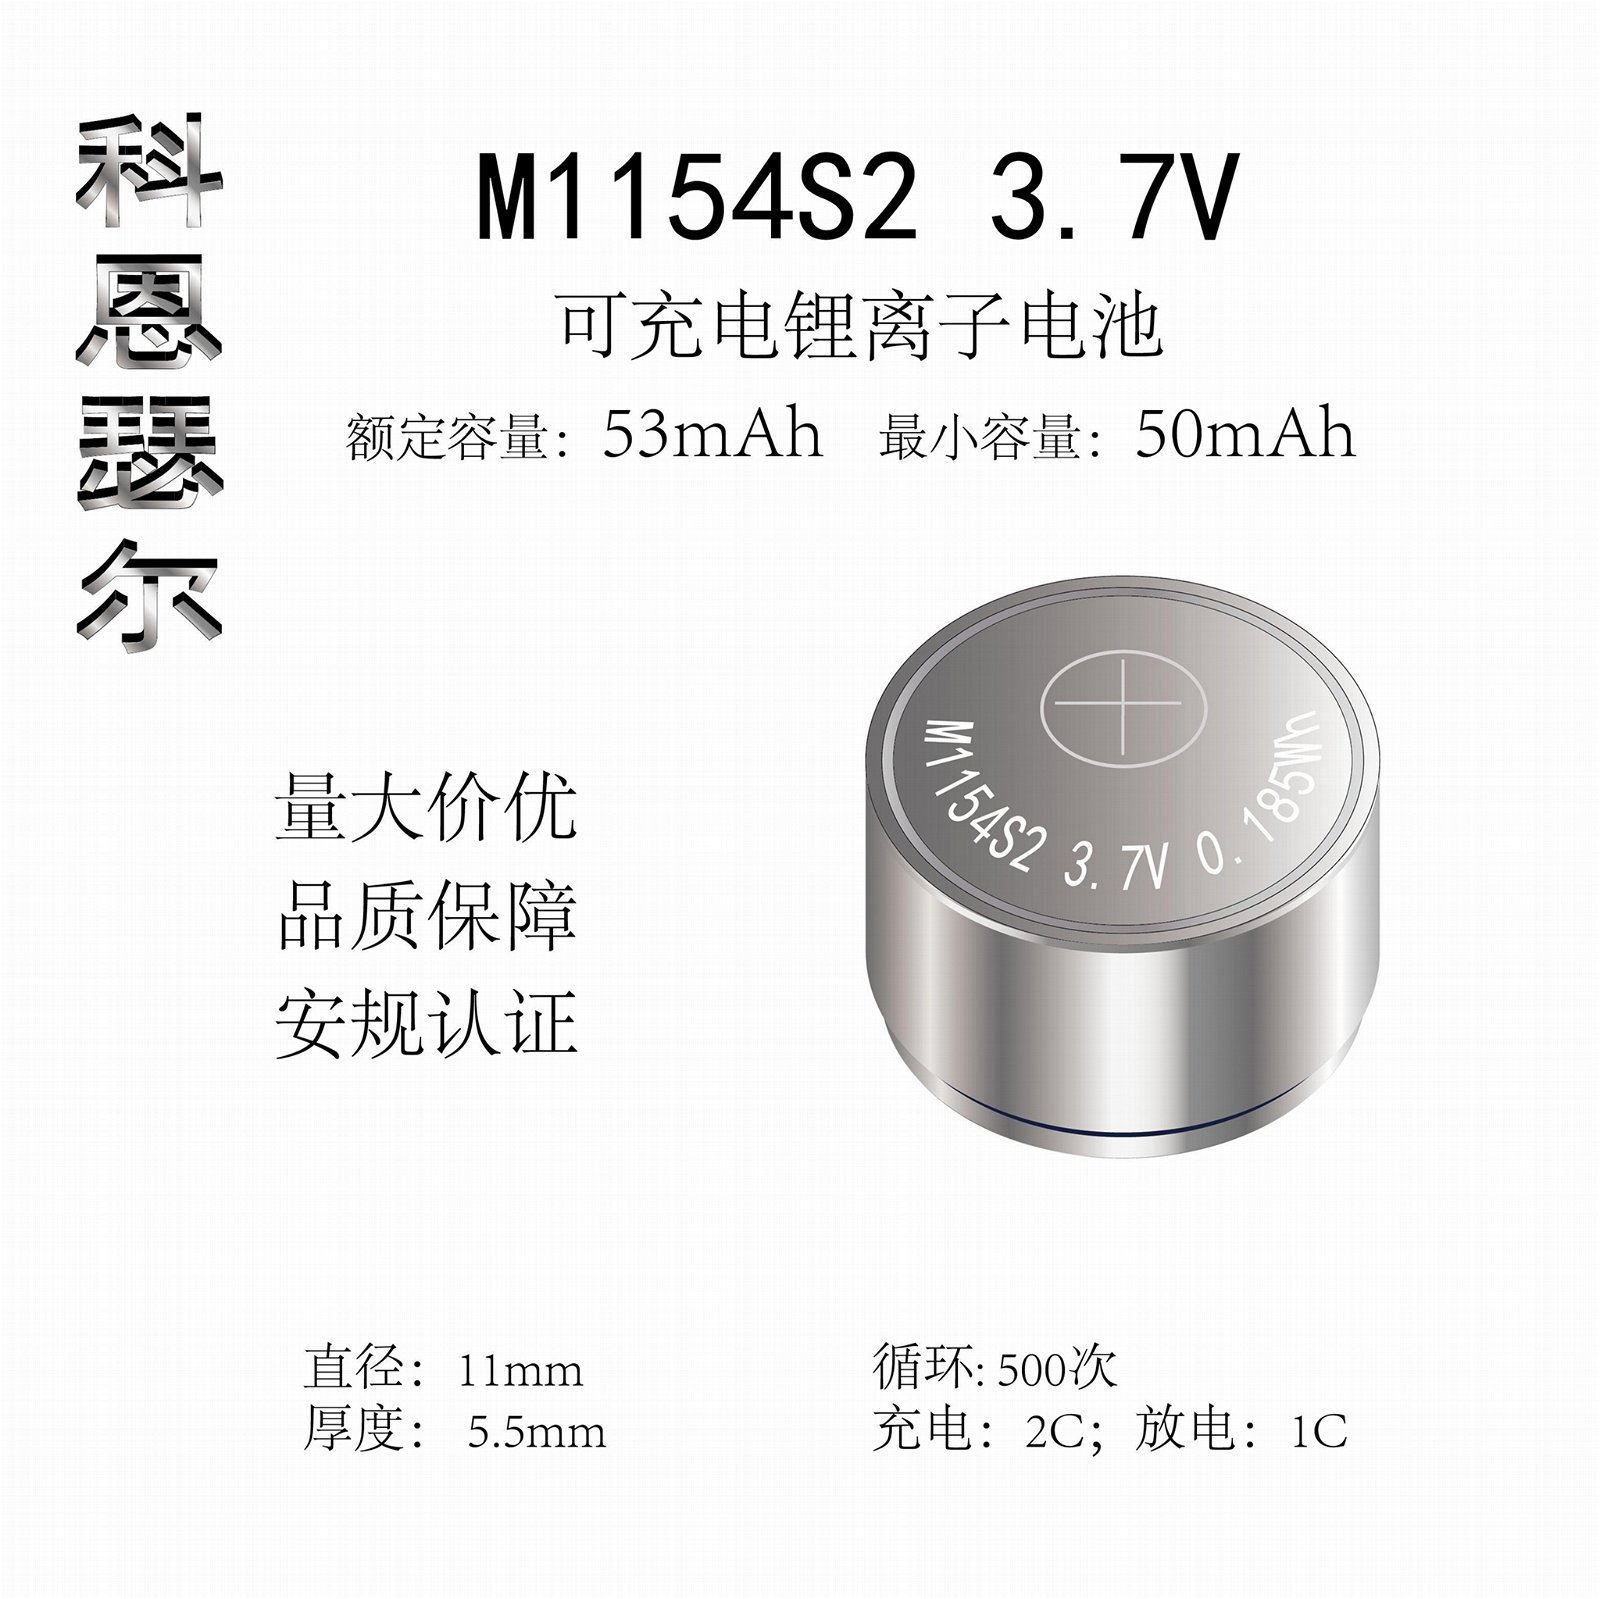 M1154 3.7V 53mAh TWS無線耳機紐扣式鋰離子電池 3